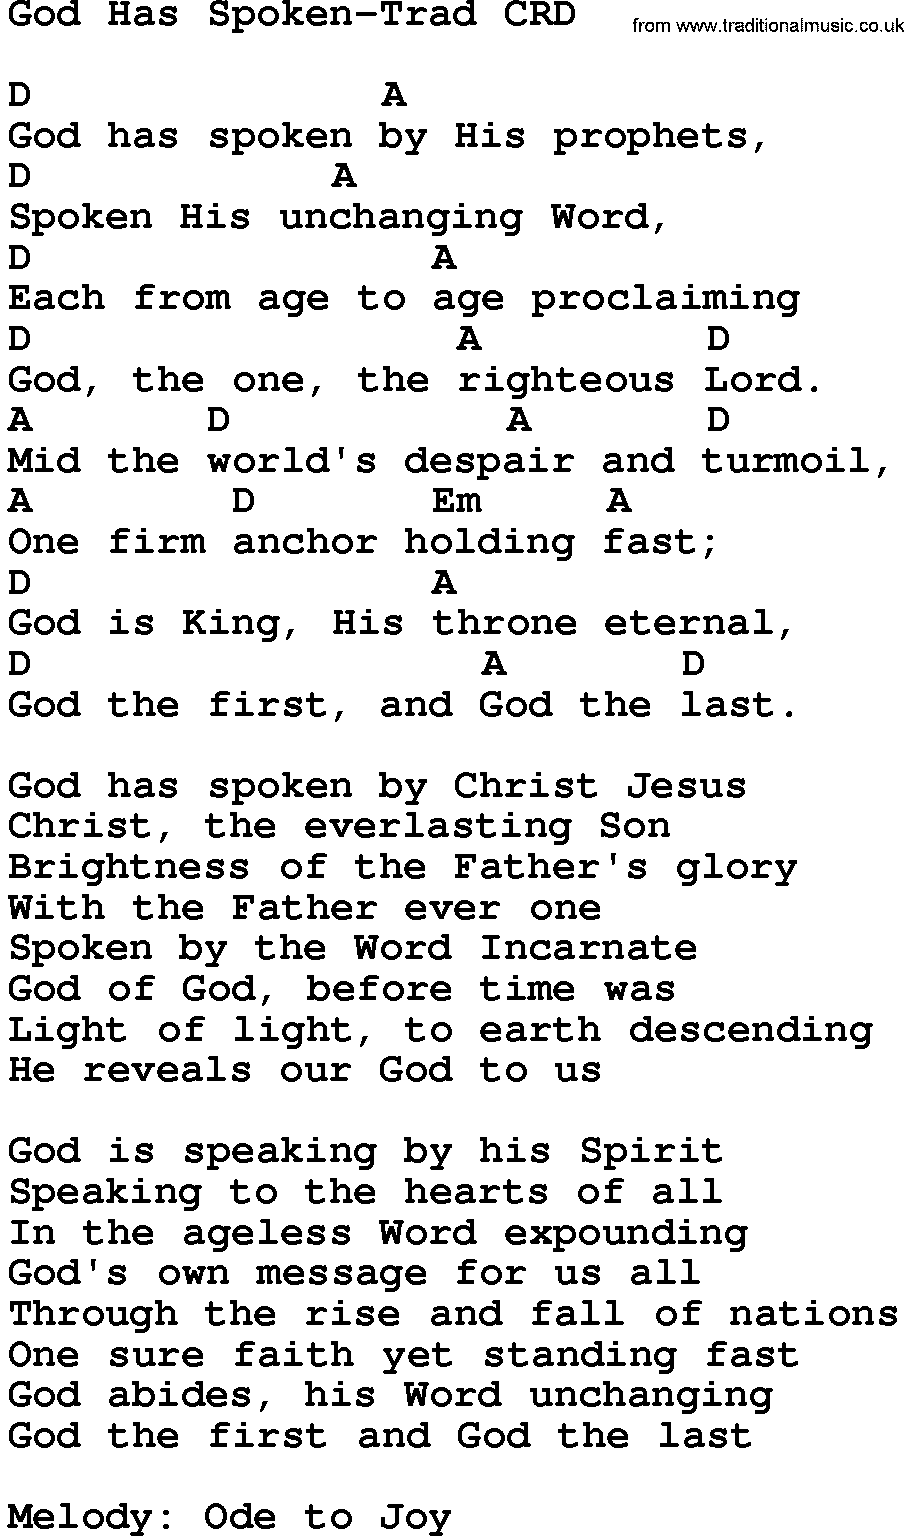 Gospel Song: God Has Spoken-Trad, lyrics and chords.